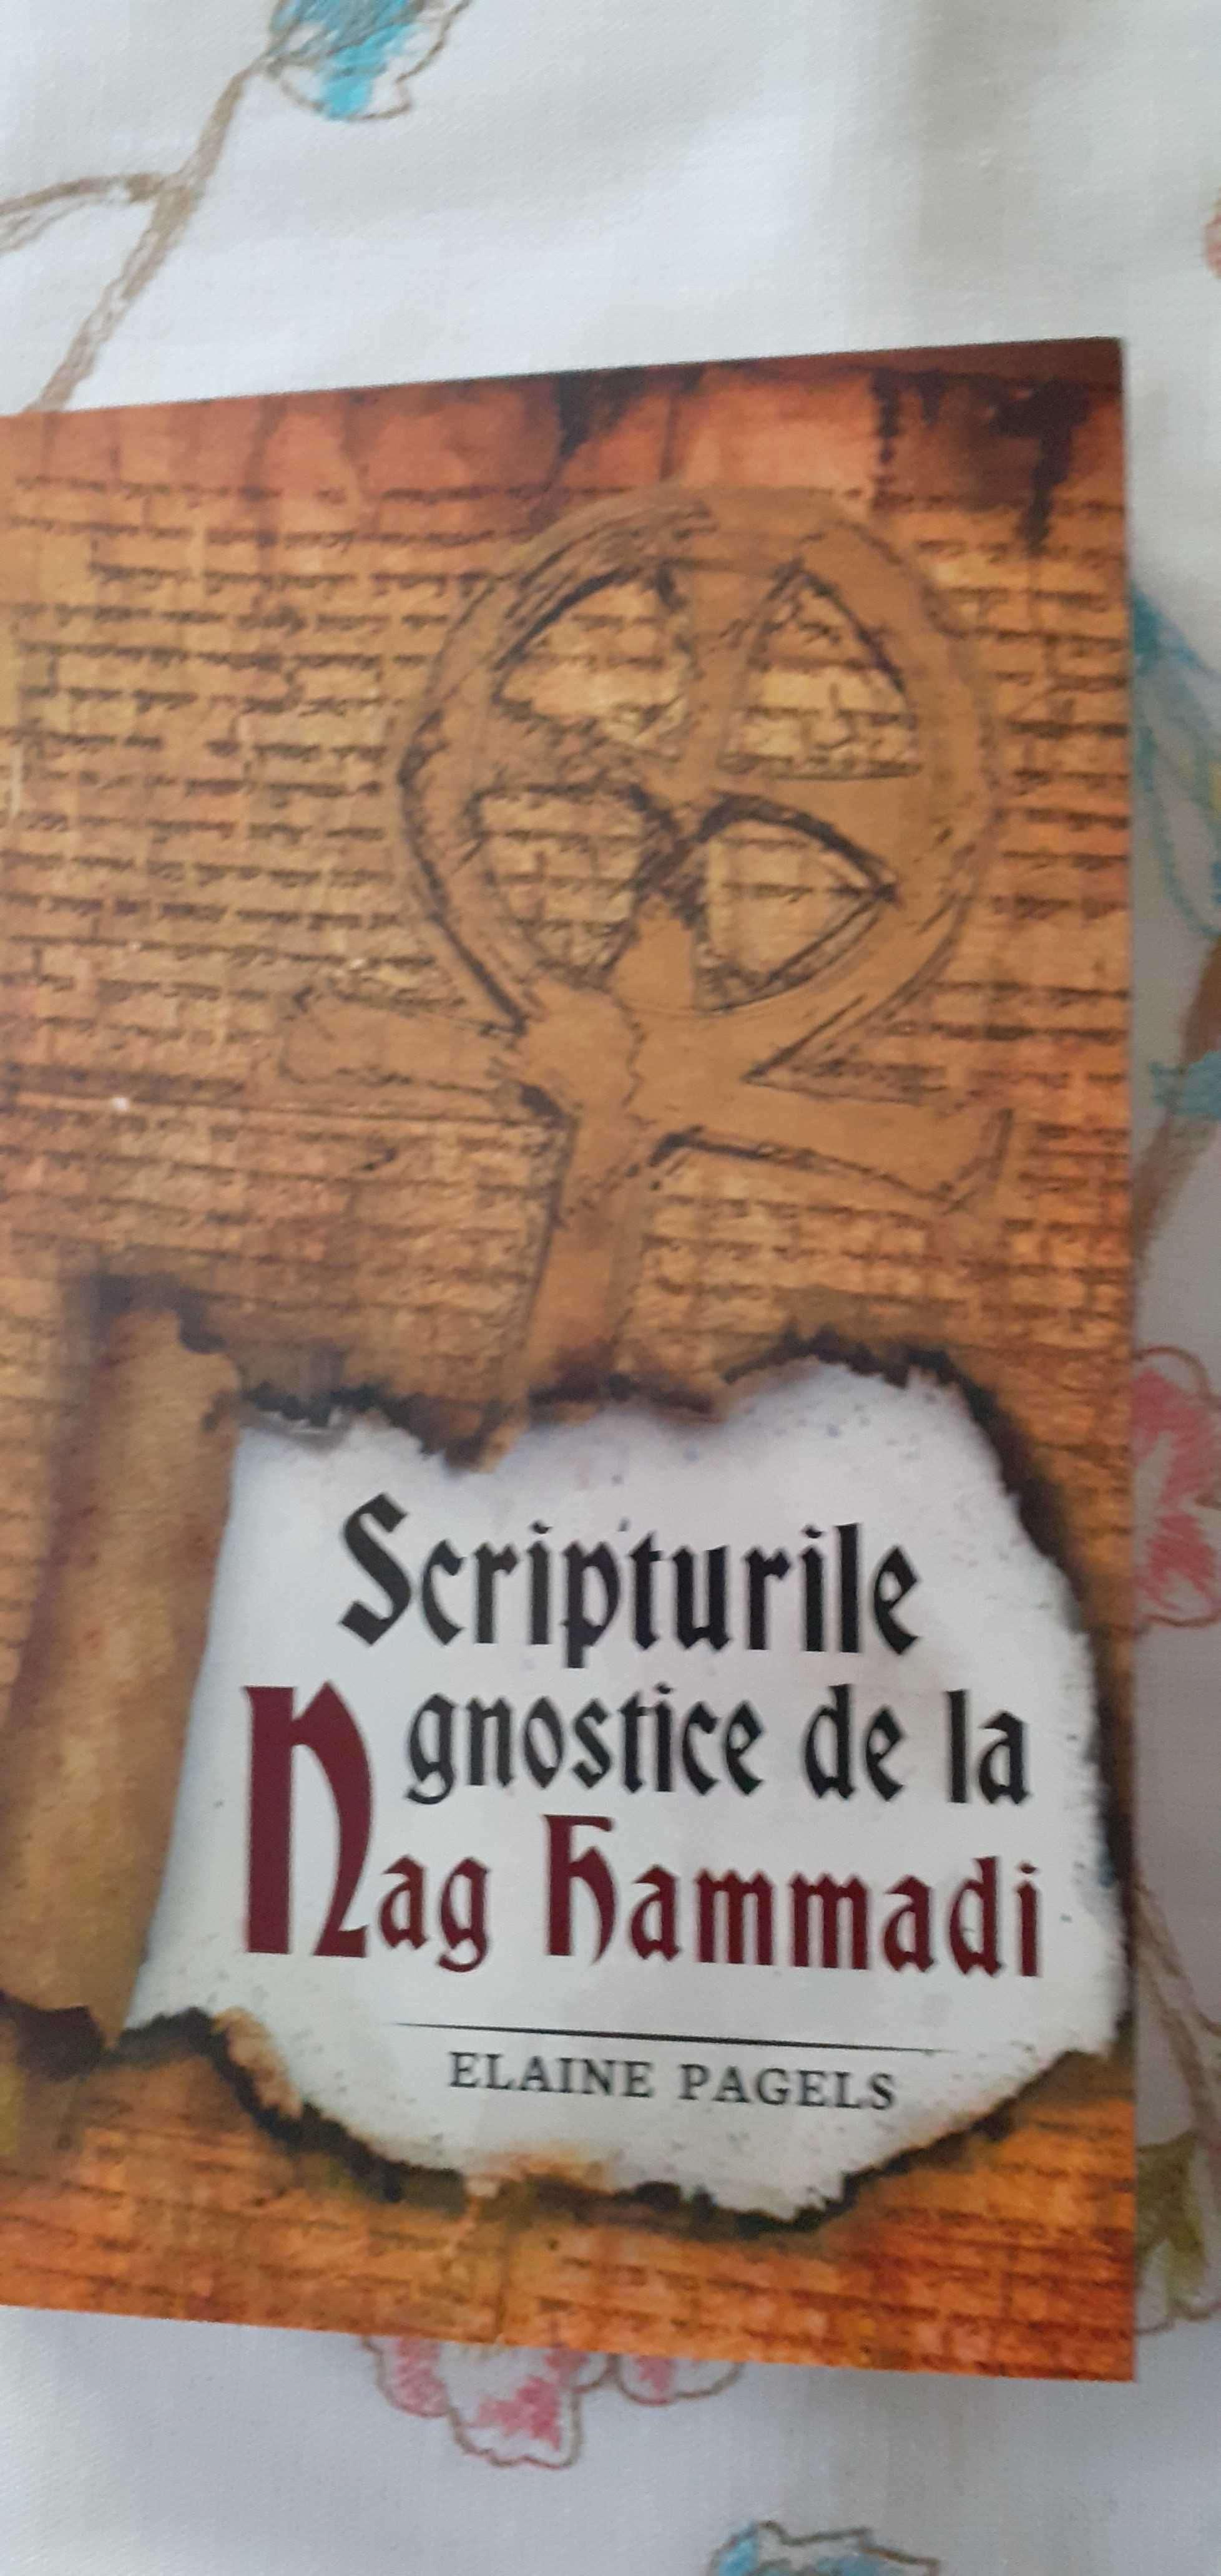 Carte, Elaine Pagels, Scripturile gnostice de la Nag Hammadi